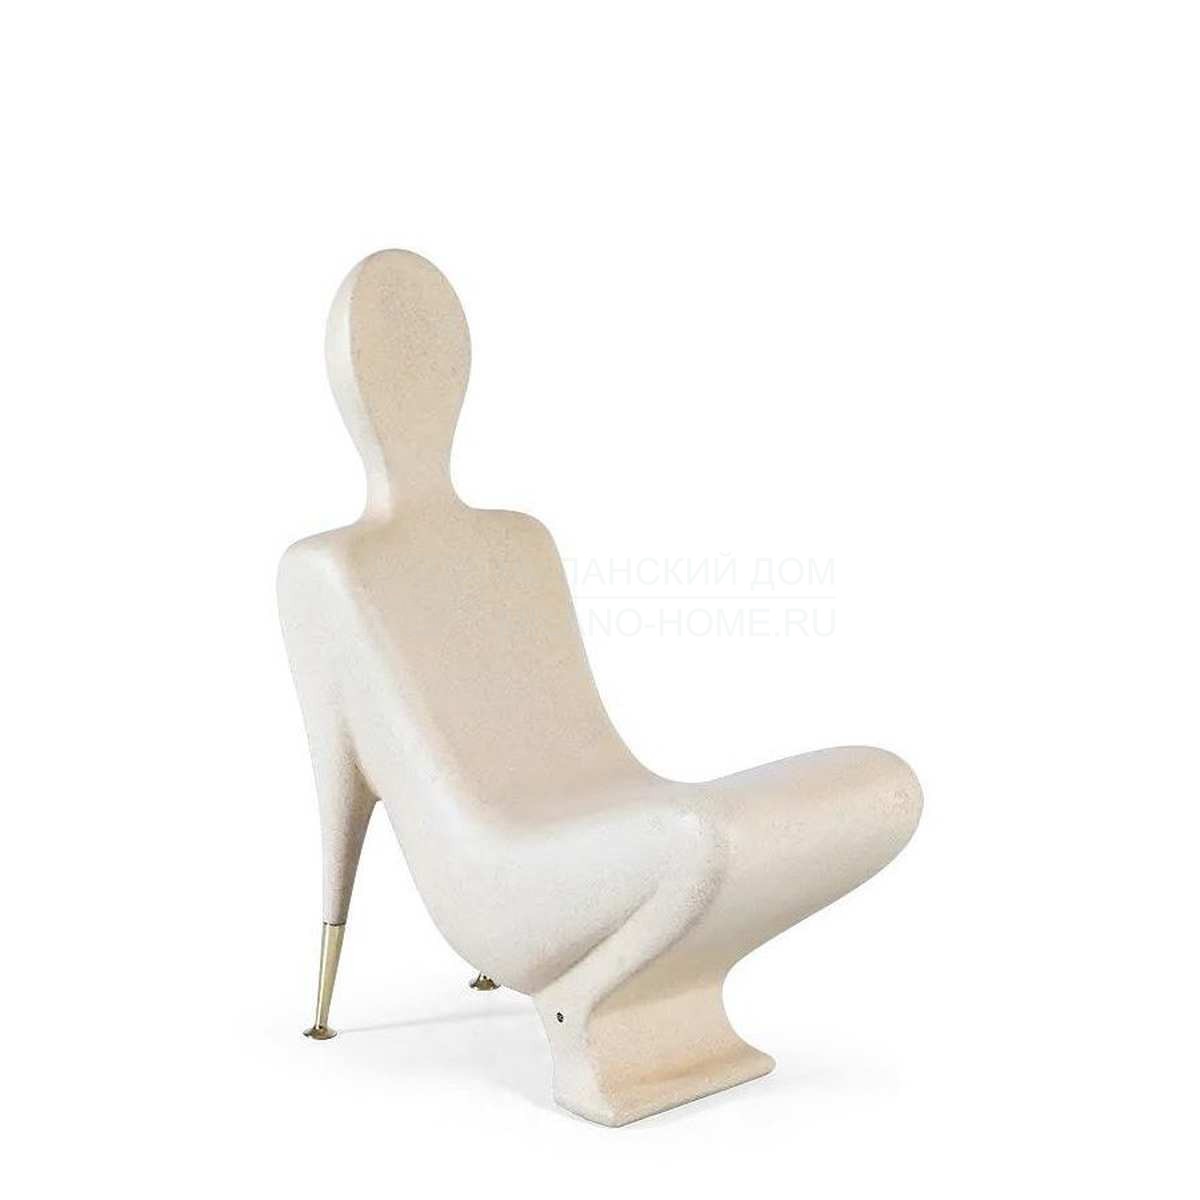 Стул Le Lotus chair  из США фабрики CHRISTOPHER GUY